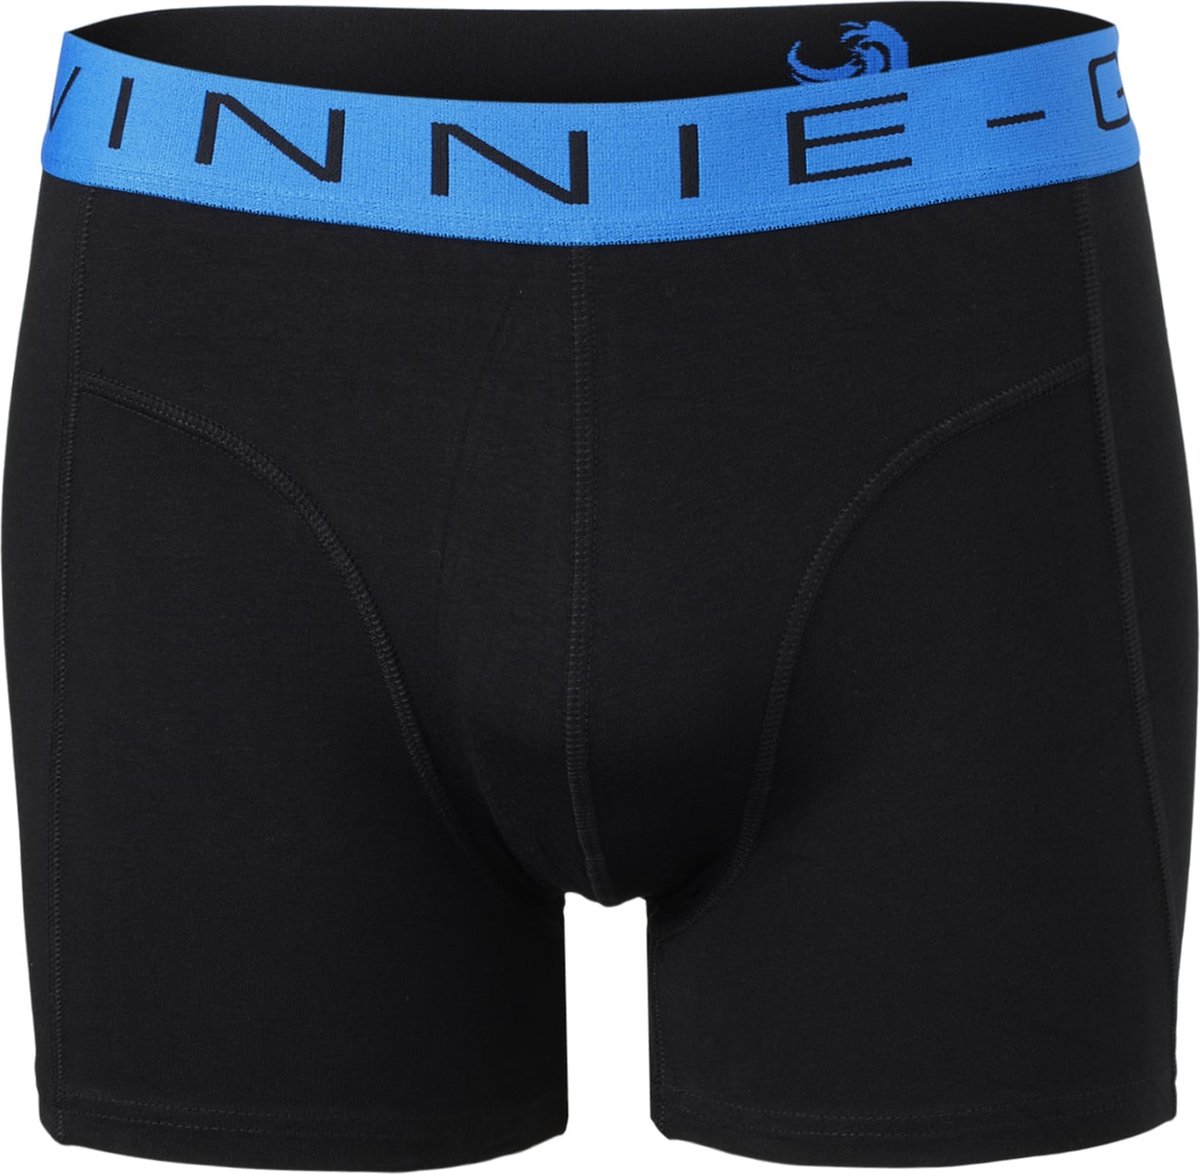 Vinnie-G Boxershorts 2-pack Black /Blue Combo - Maat L - Heren Onderbroeken Zwart/Blauw - Geen irritante Labels - Katoen heren ondergoed